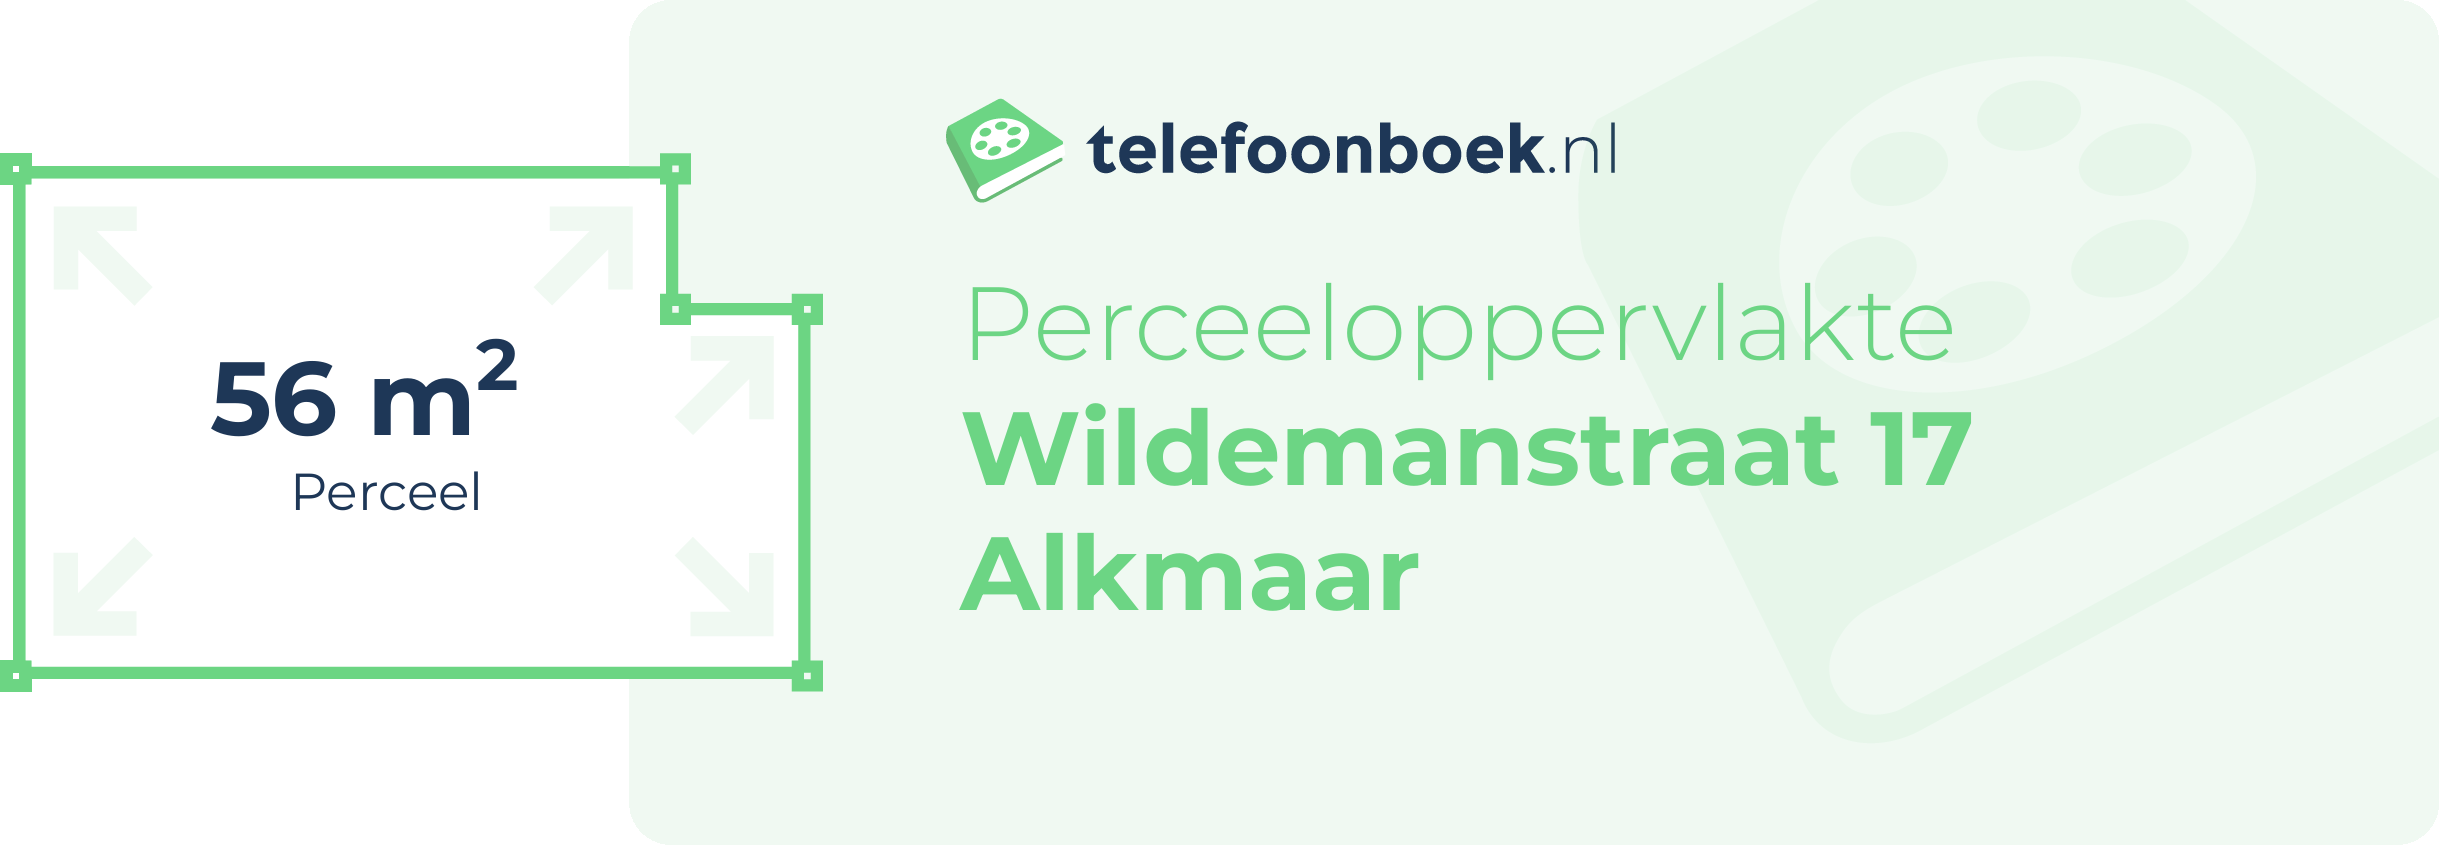 Perceeloppervlakte Wildemanstraat 17 Alkmaar